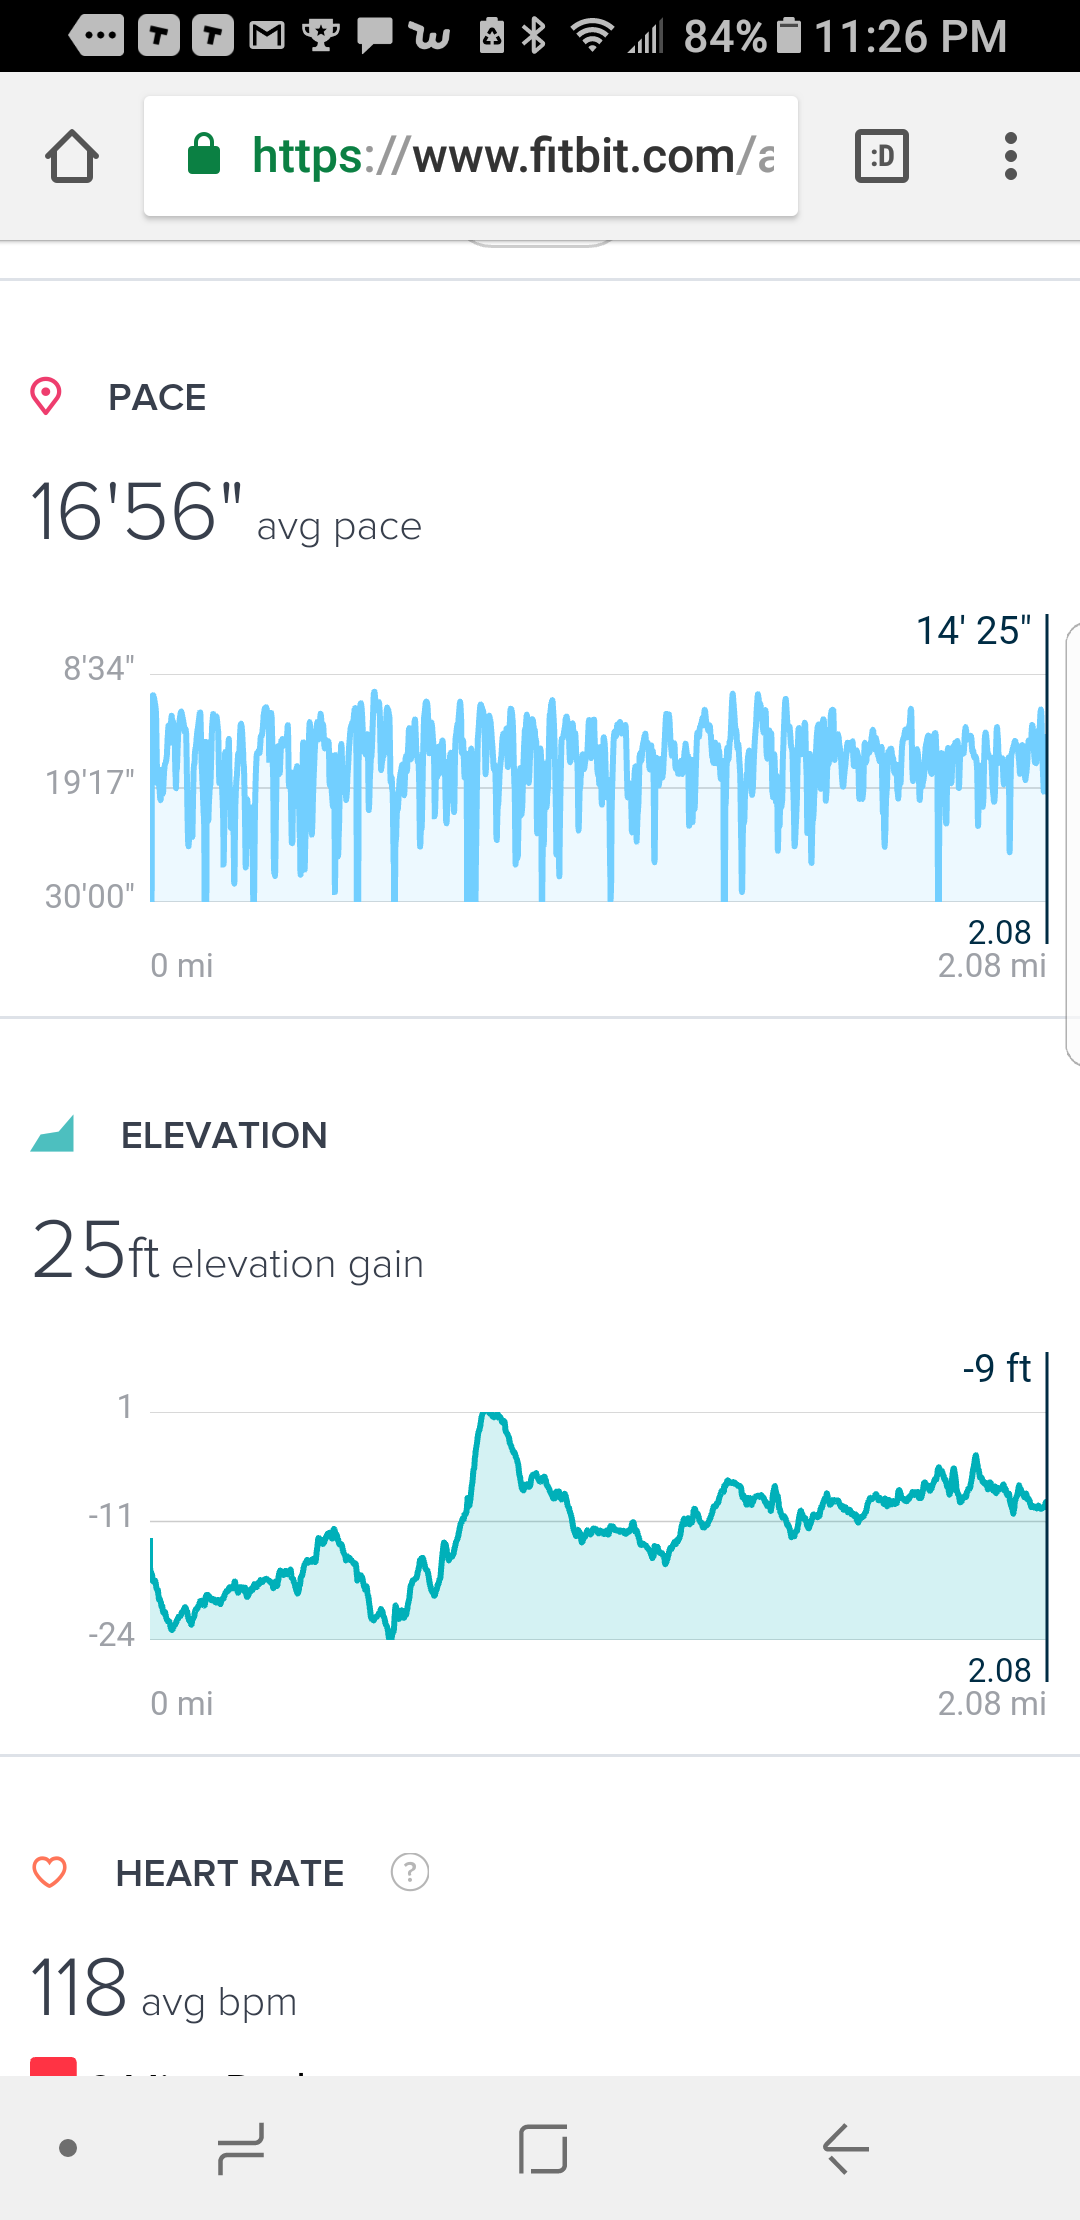 Live Elevation Data (including changes 